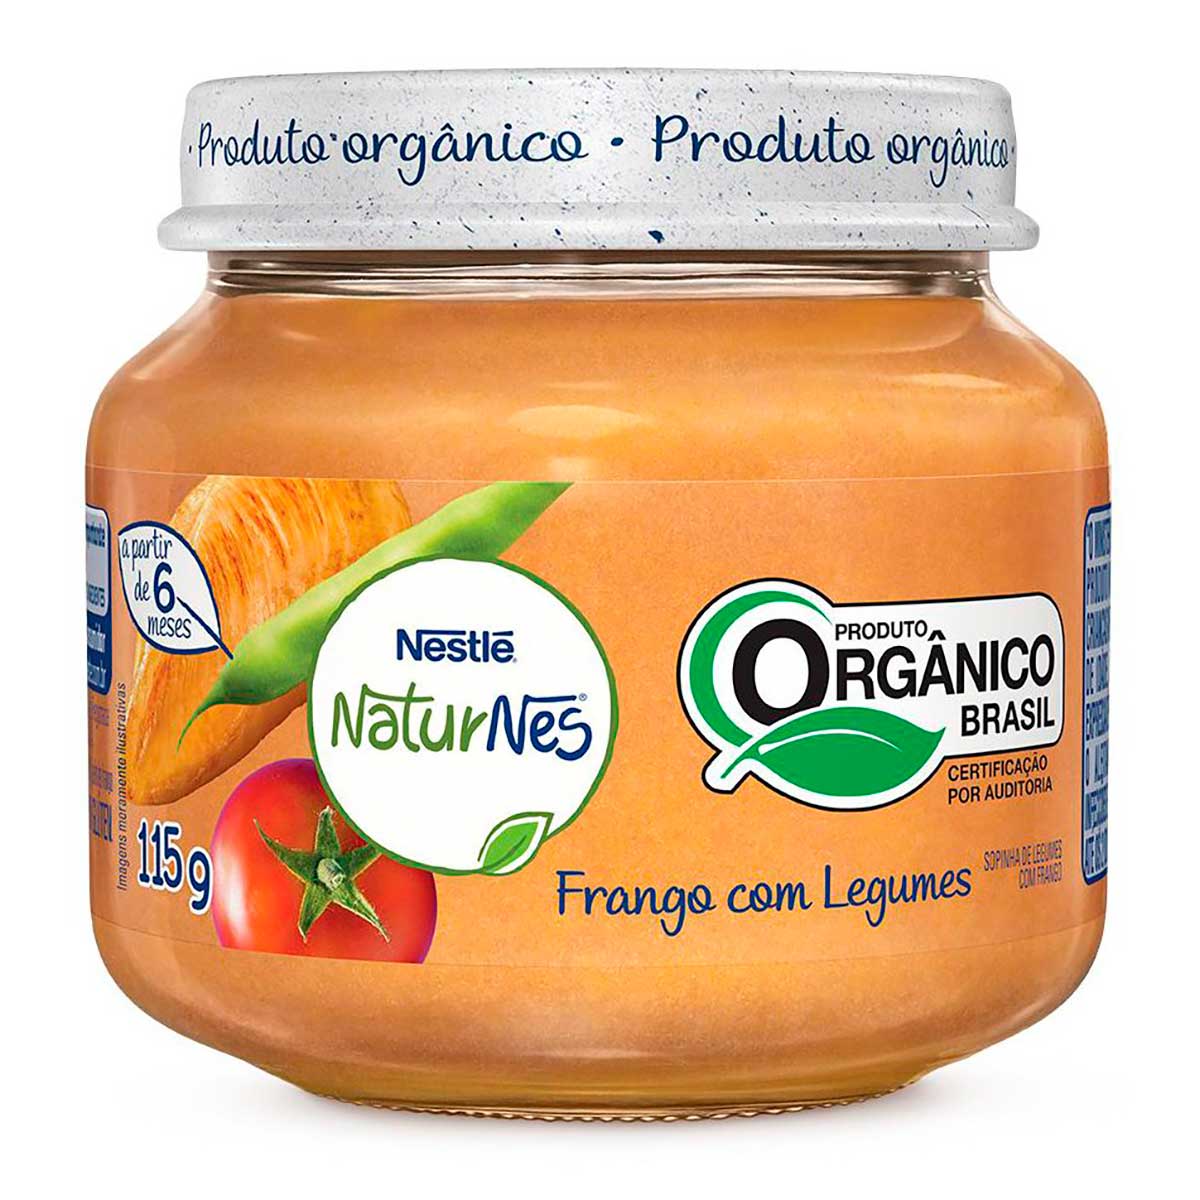 papinha-organica-de-frango-com-legumes-nestle-naturnes-115-g-1.jpg